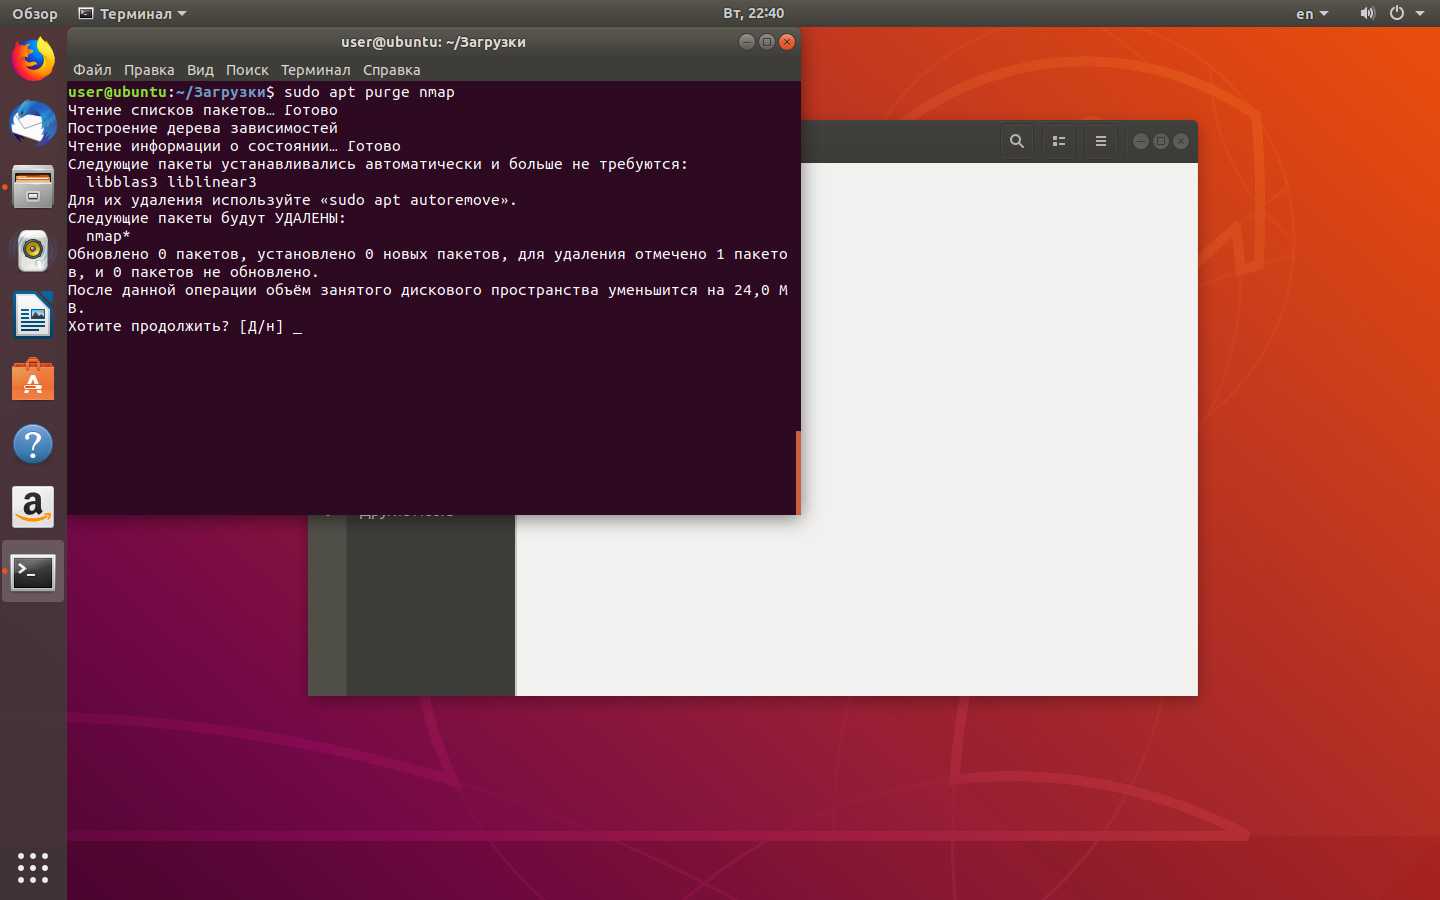 Создание и удаление пользователей на ubuntu и debian